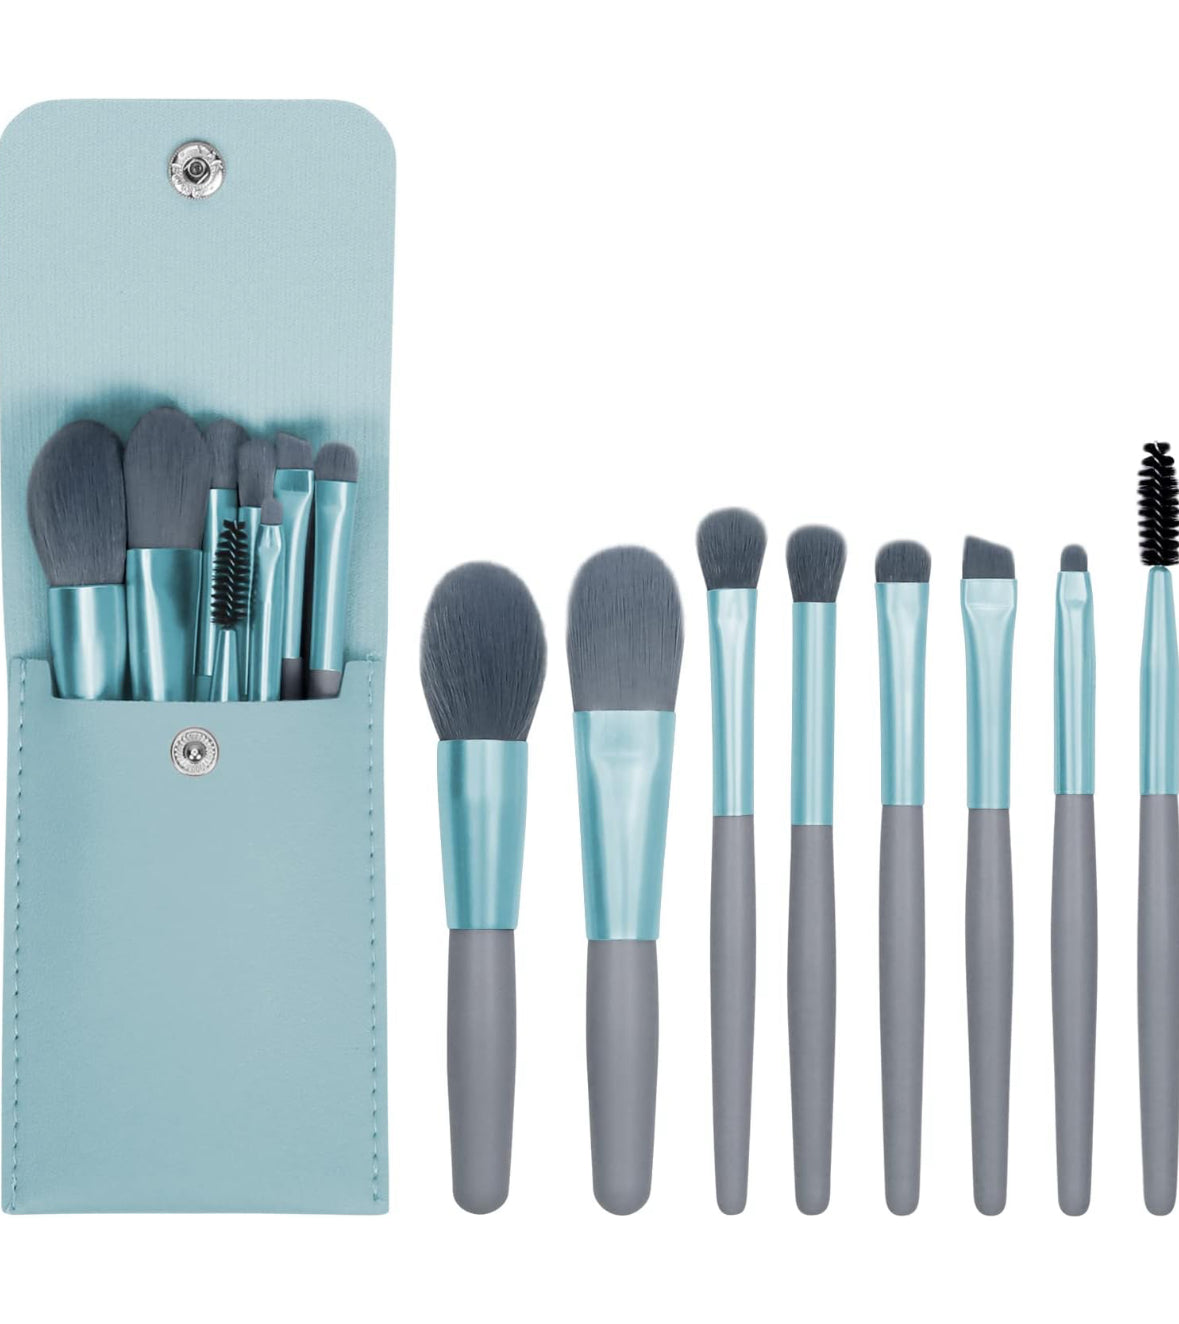 Makeup brush set